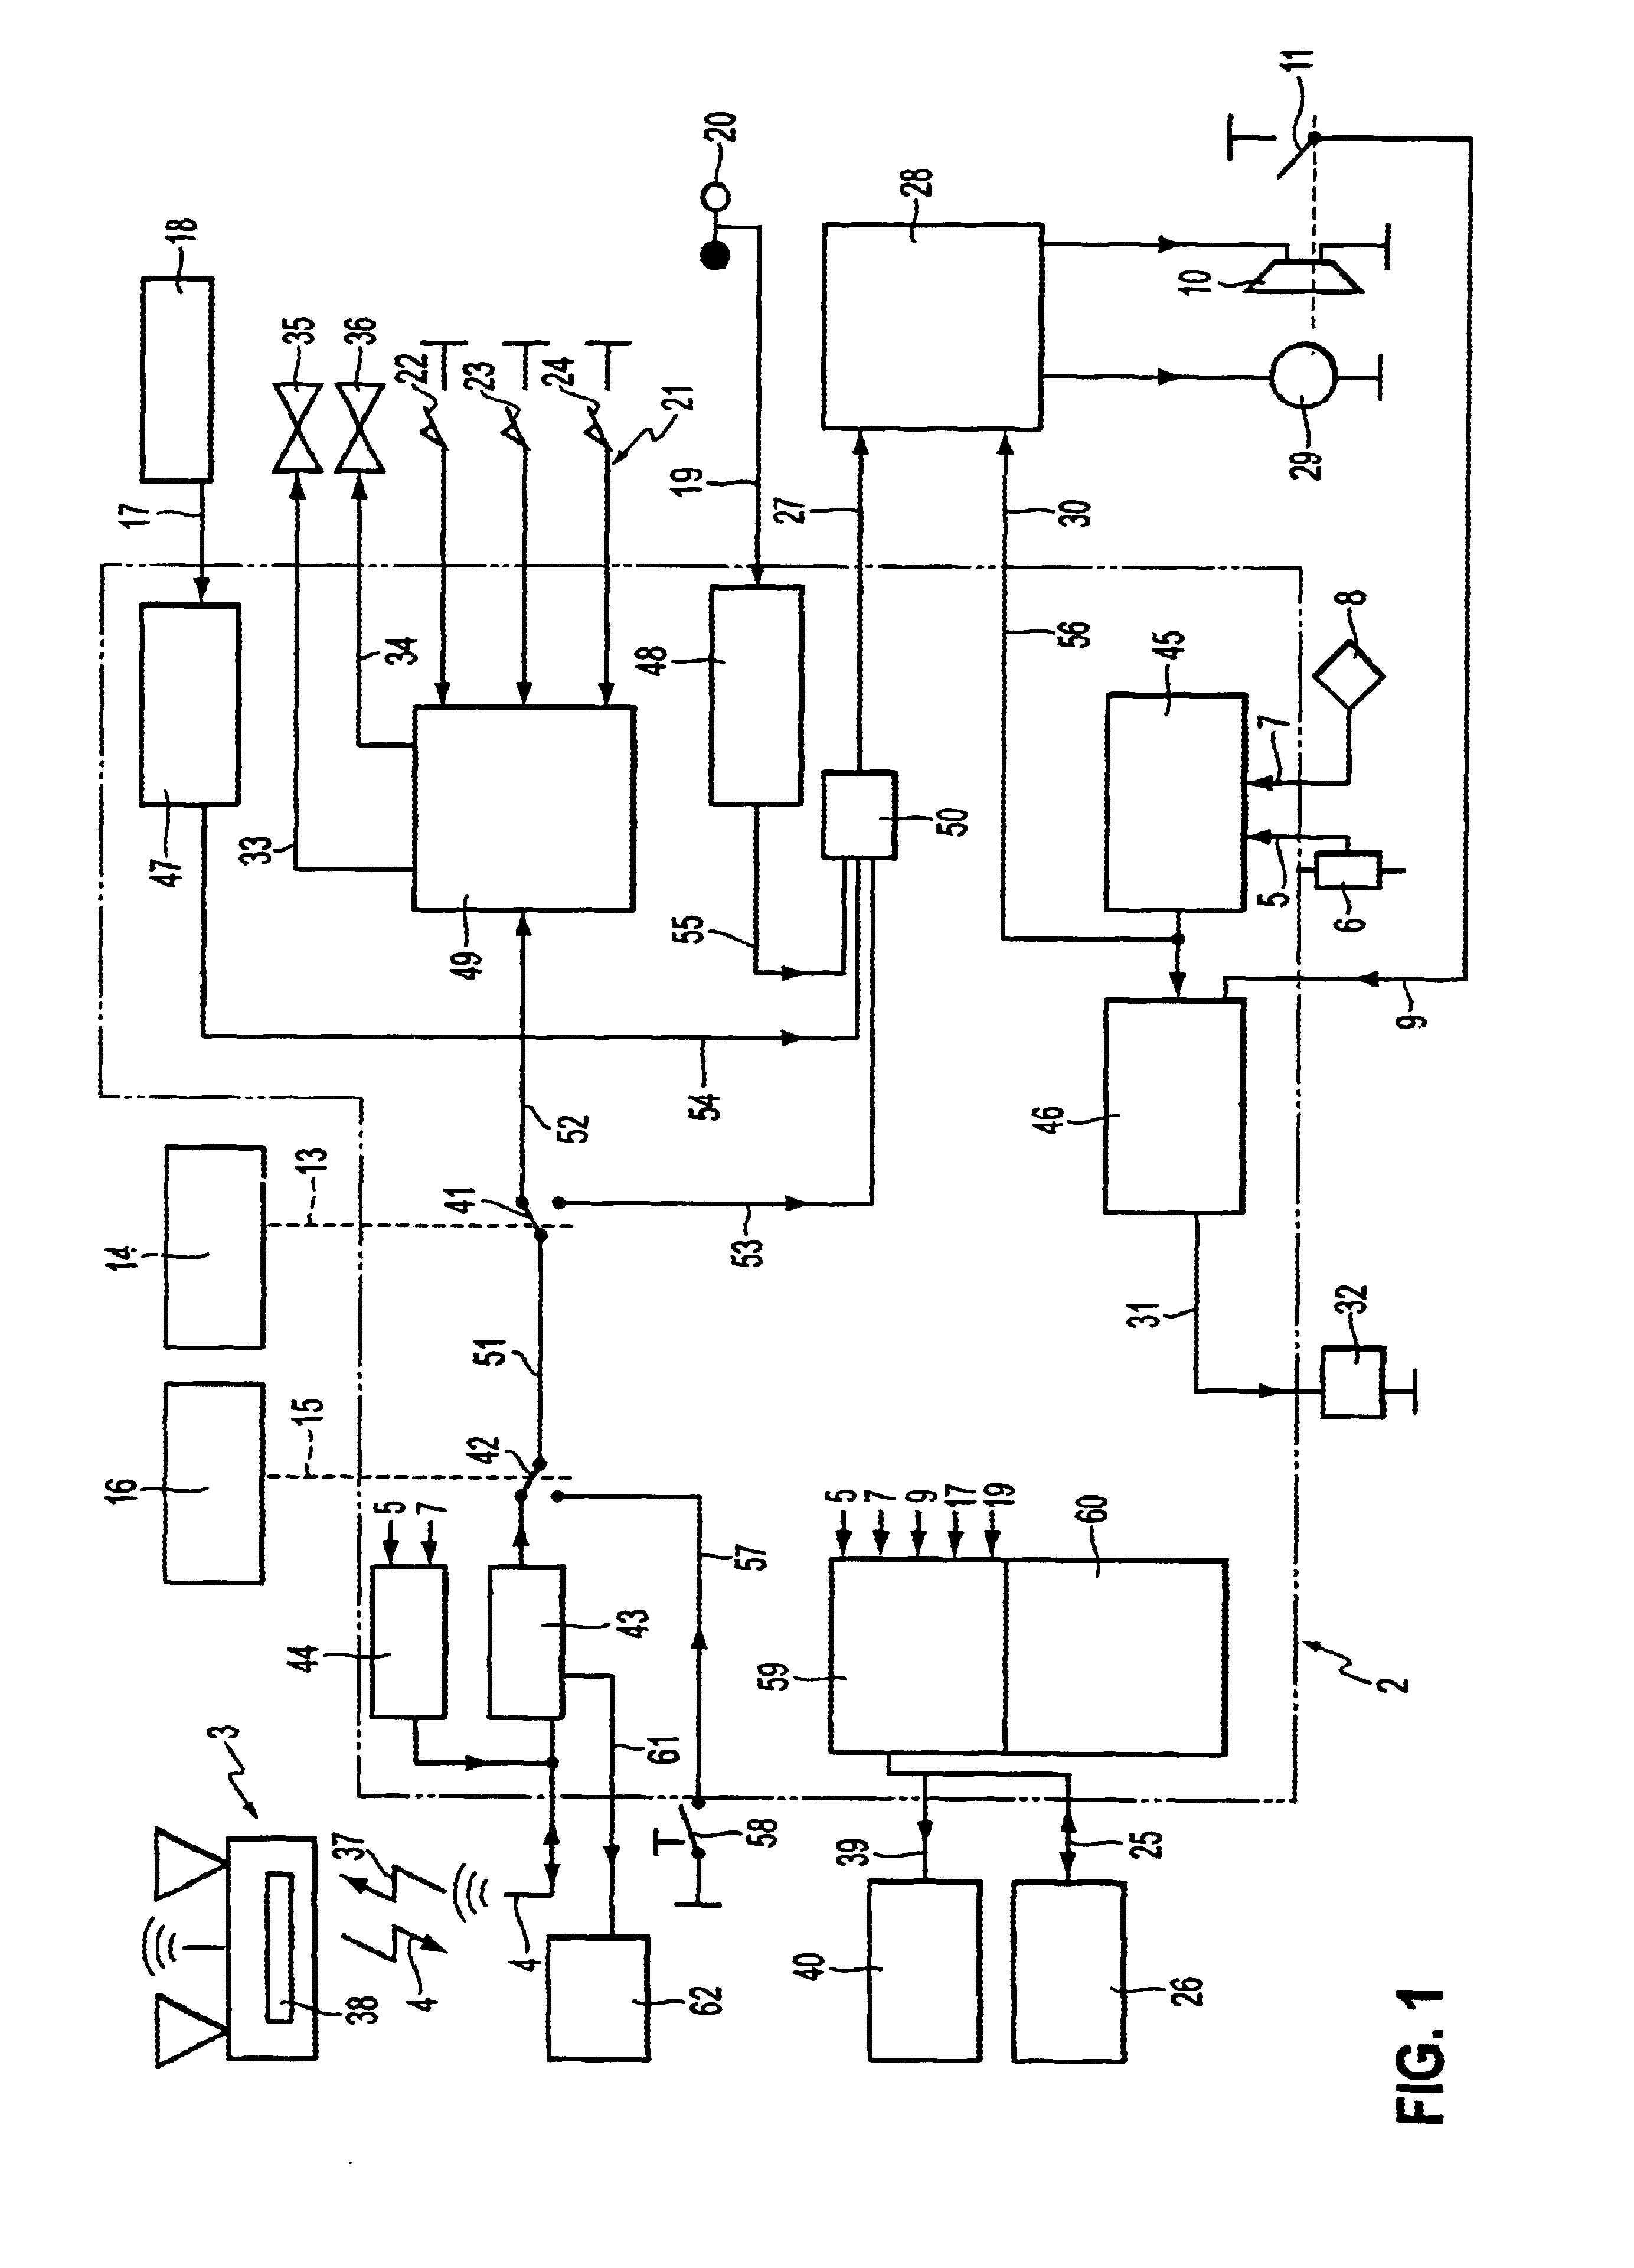 Diagram Crane Hi 6 Ignition Wiring Diagram Full Version Hd Quality Wiring Diagram Tilediagram Studiomovida It